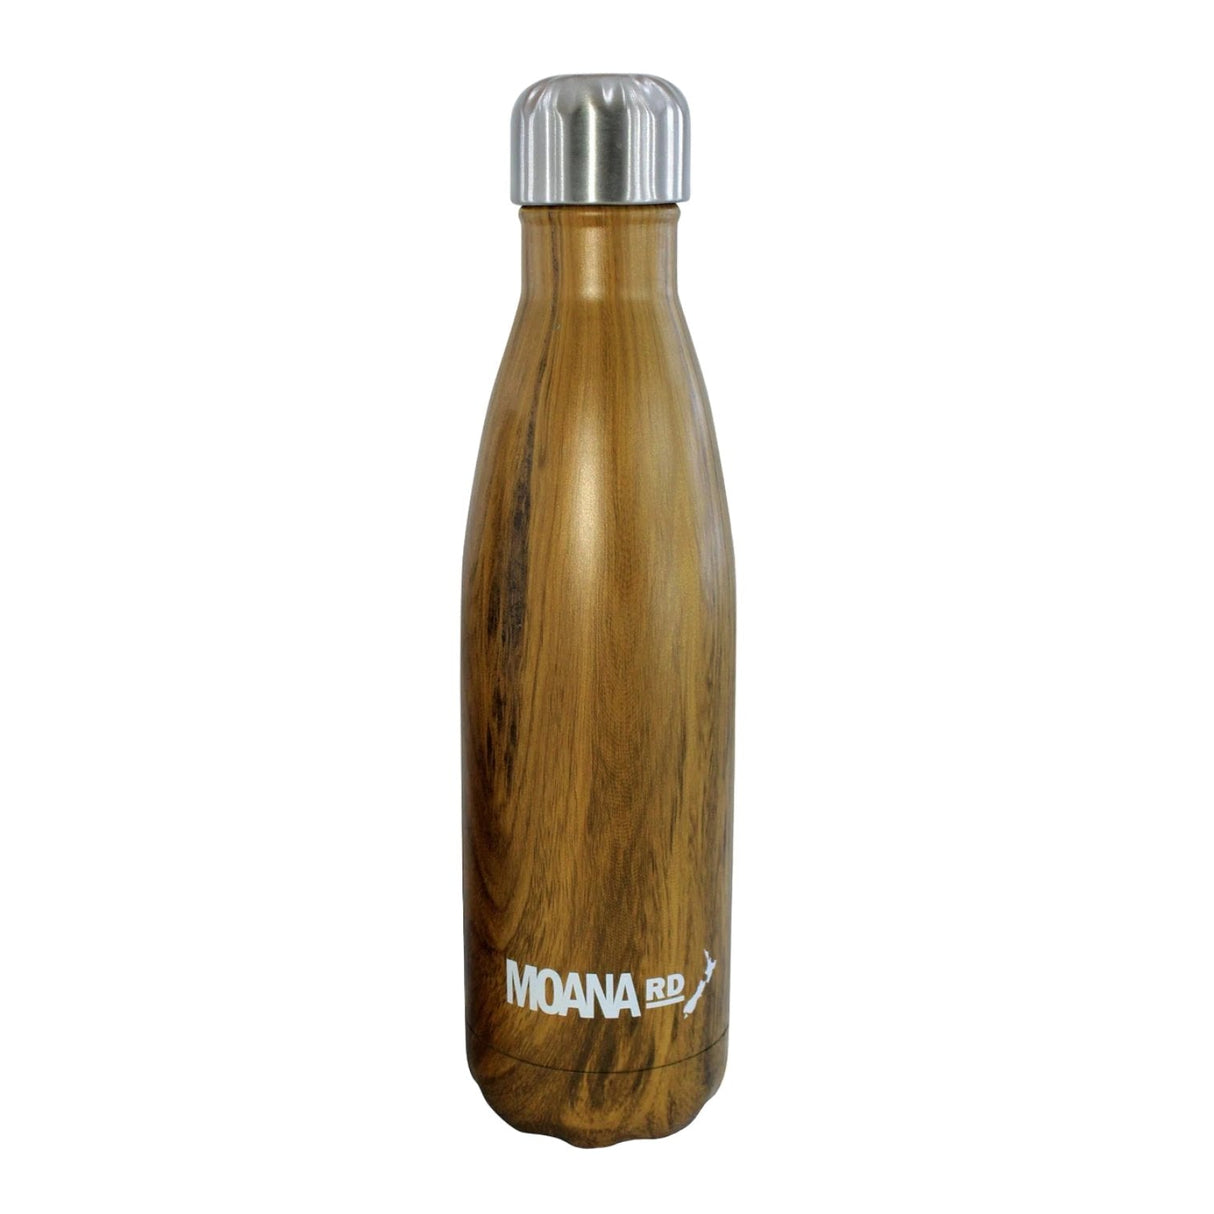 Moana Road Wooden Drink Bottle